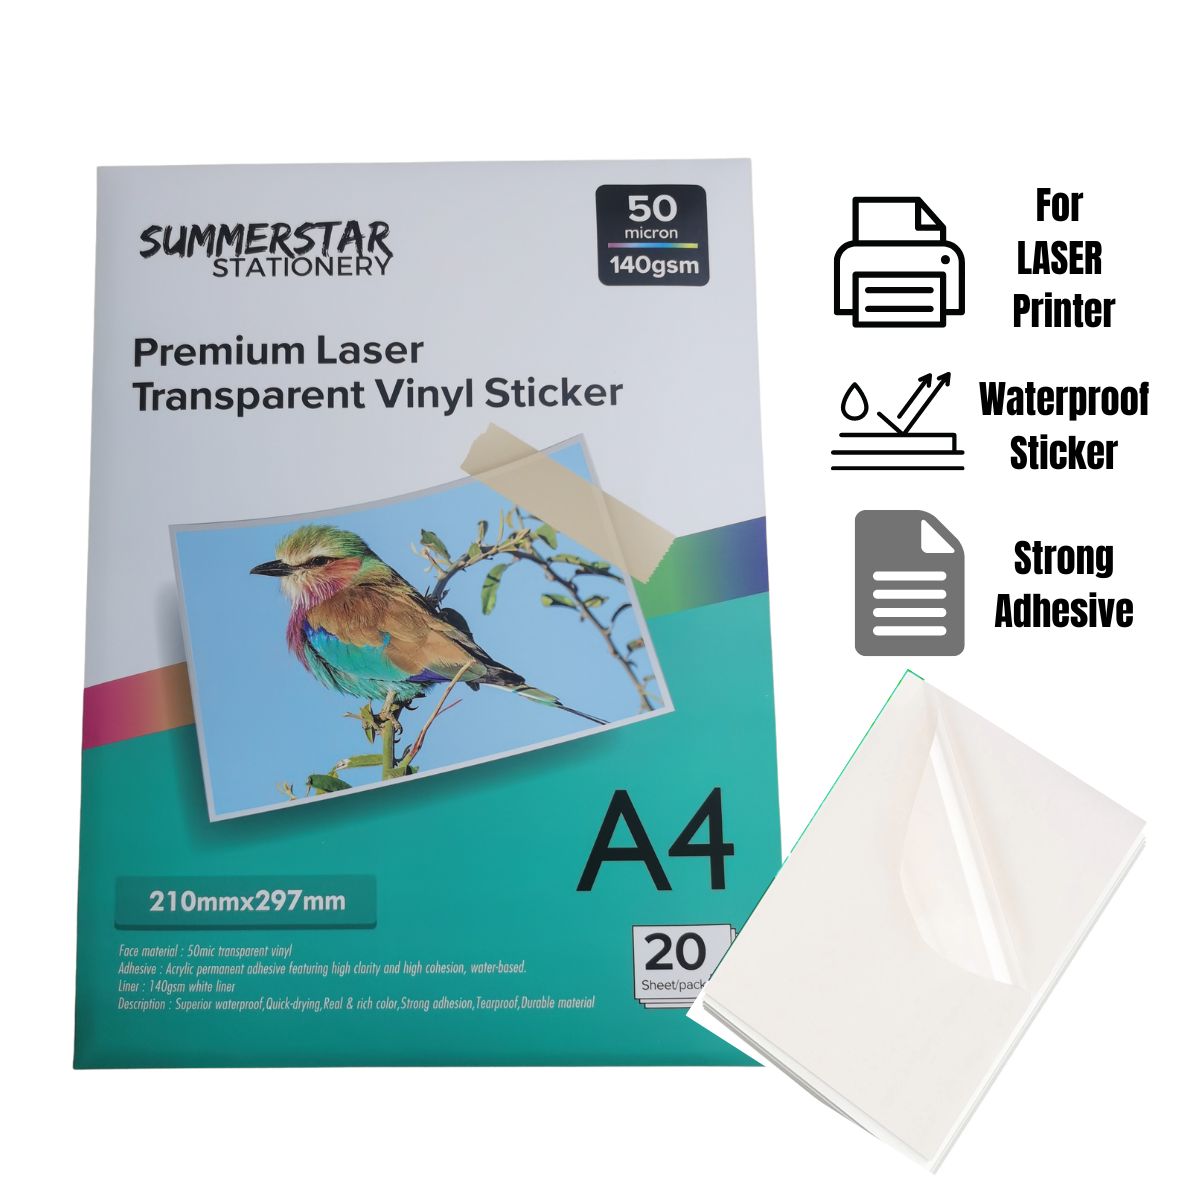 Premium Laser Transparent Vinyl Sticker